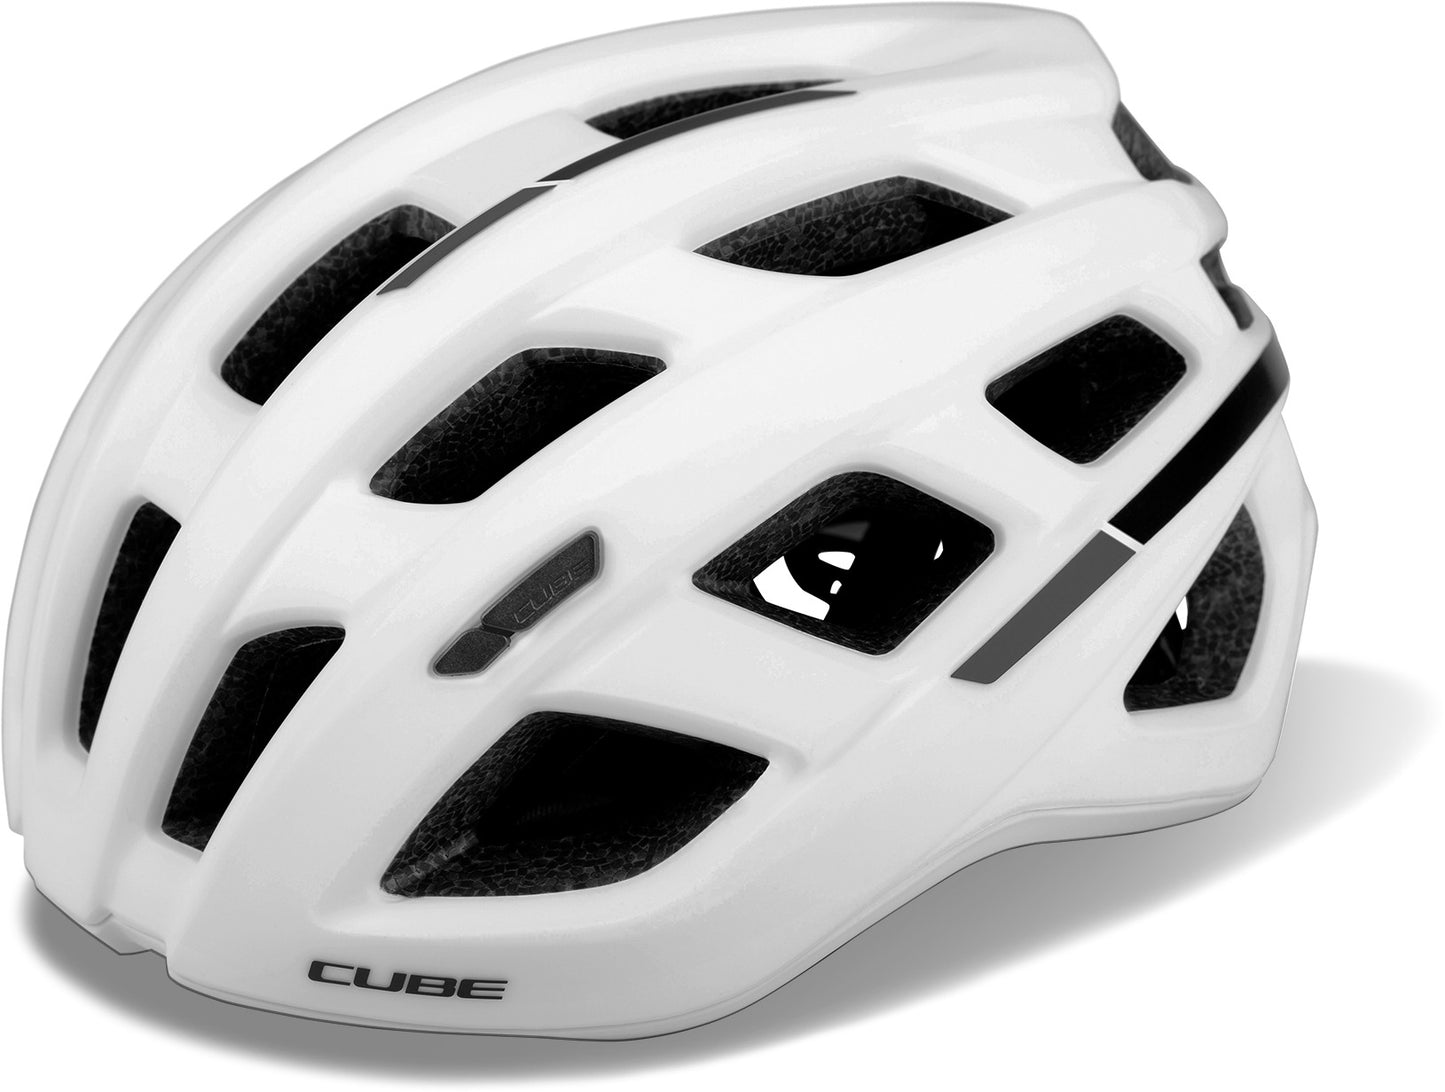 CUBE Helmet Road Race White